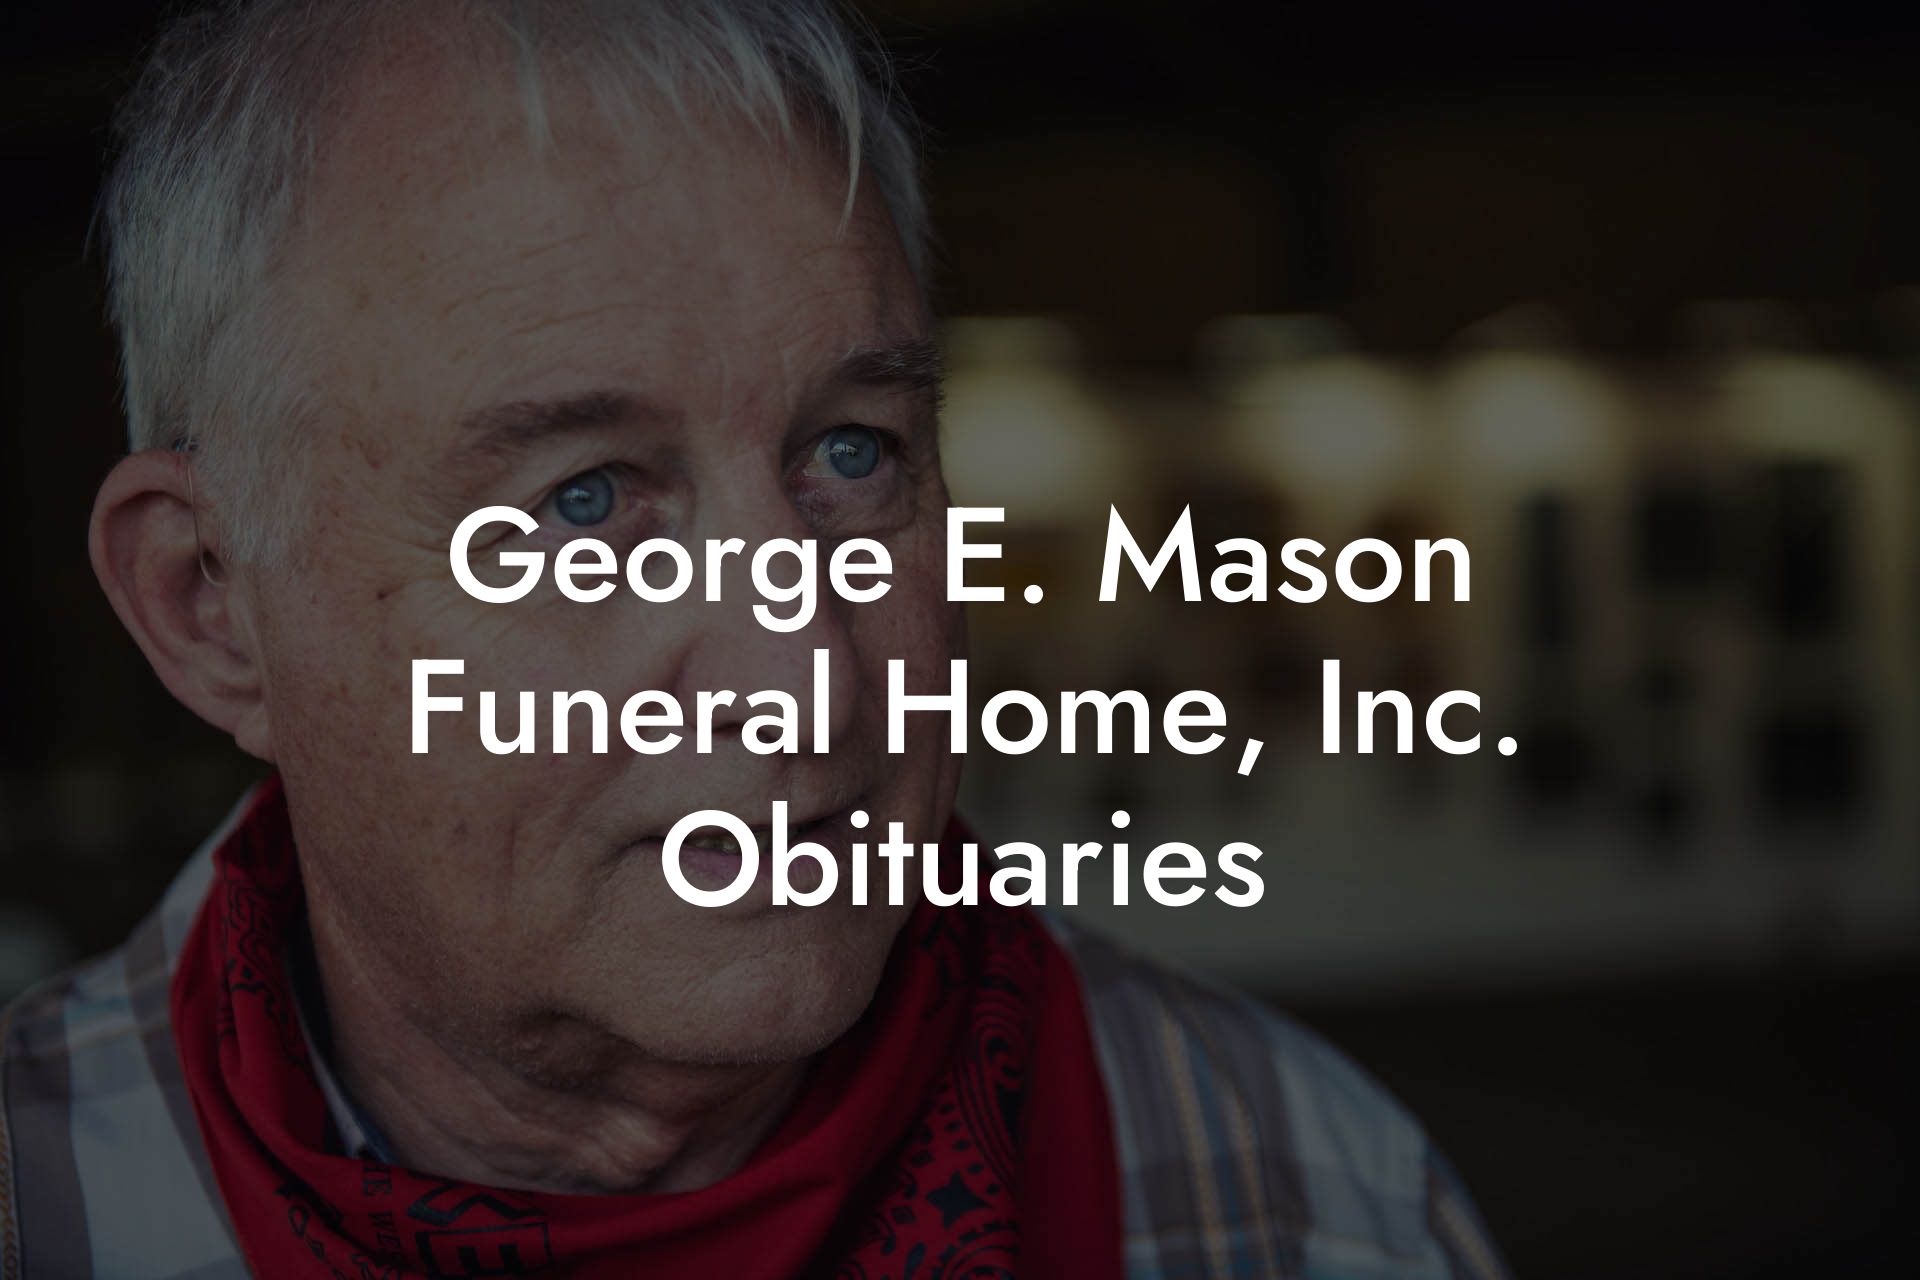 George E. Mason Funeral Home, Inc. Obituaries